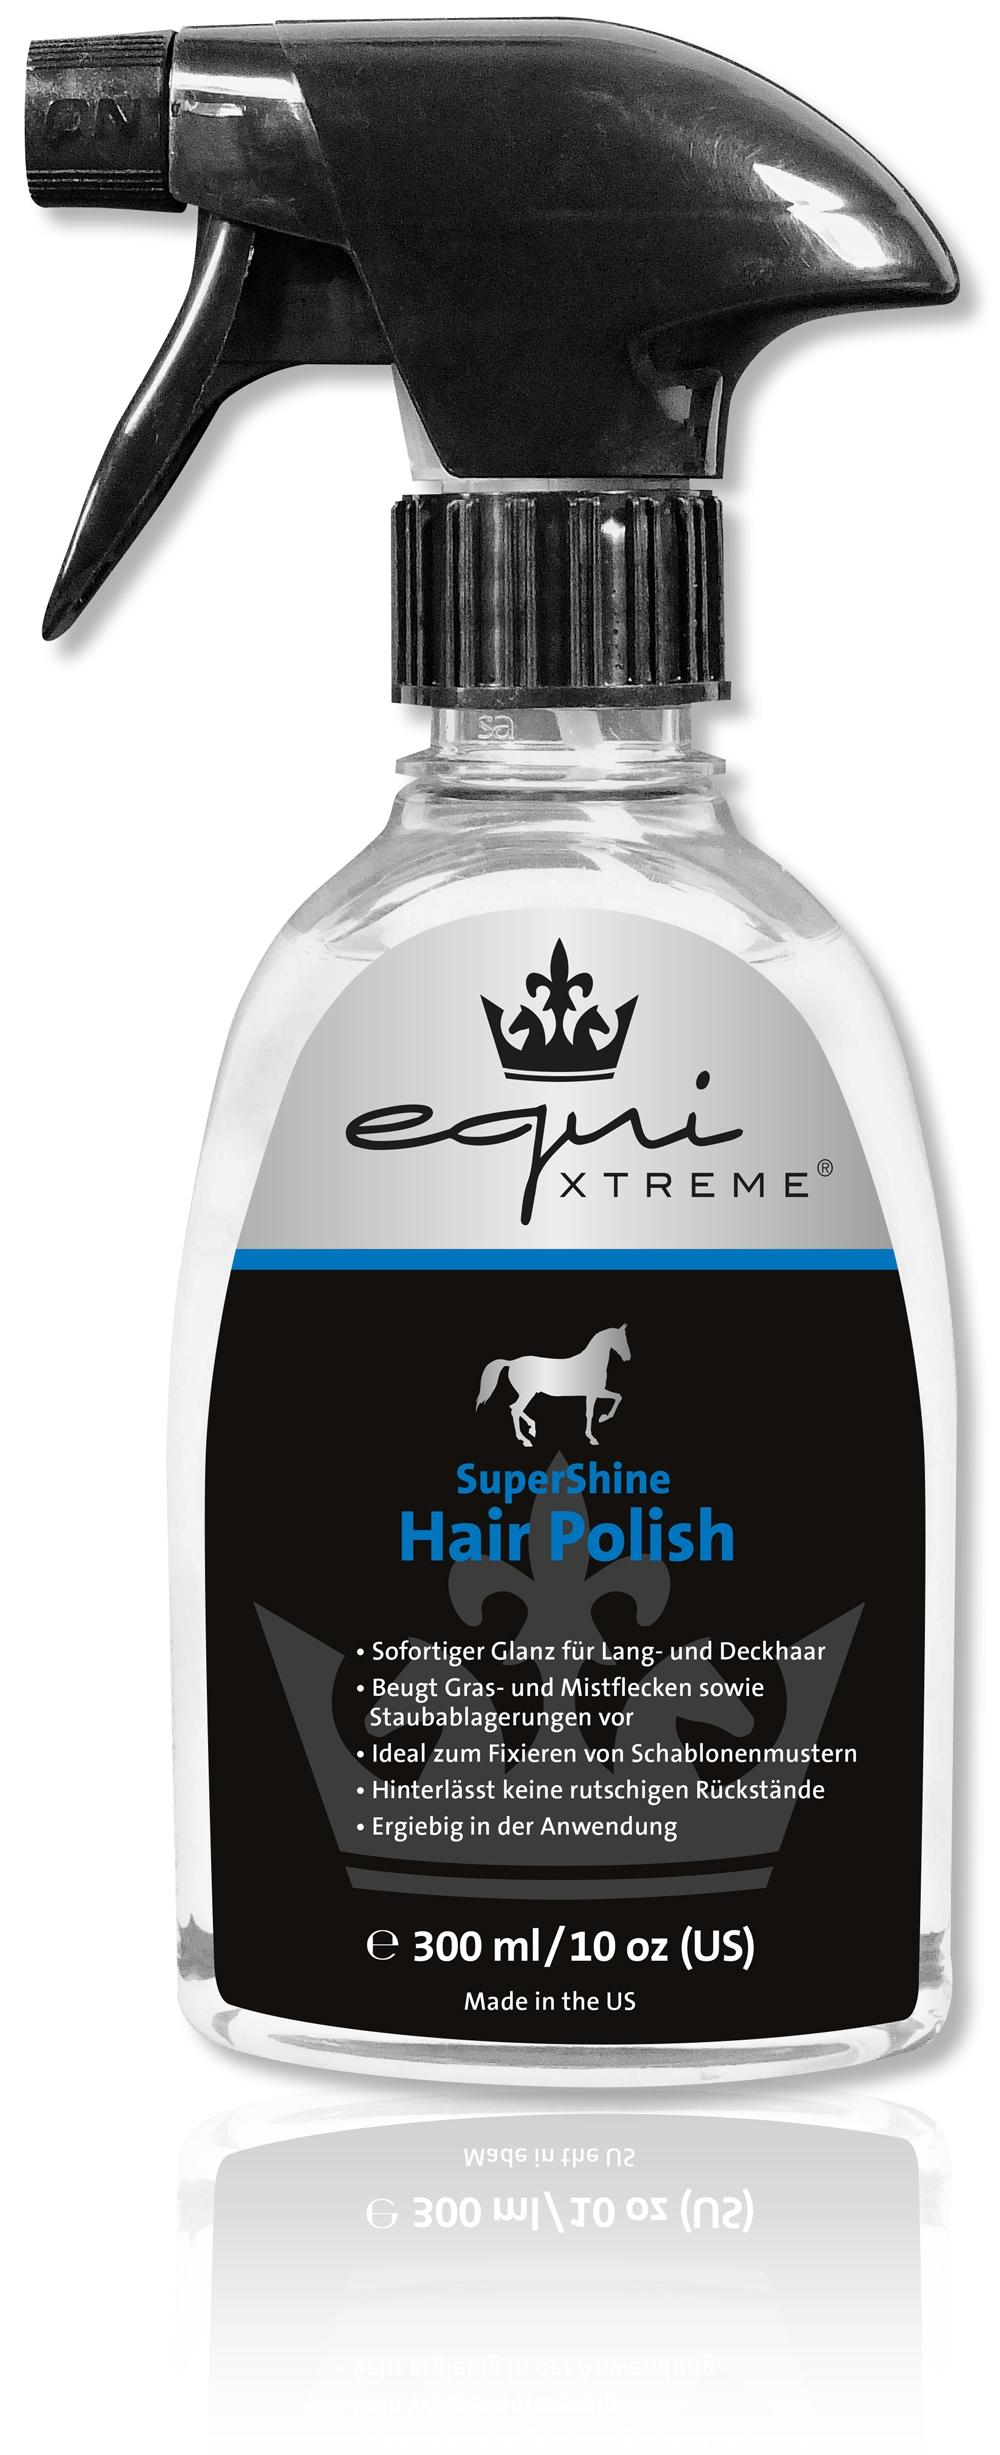 Lexa equiXTREME Super Shine Hair Polish 300 ml Flasche